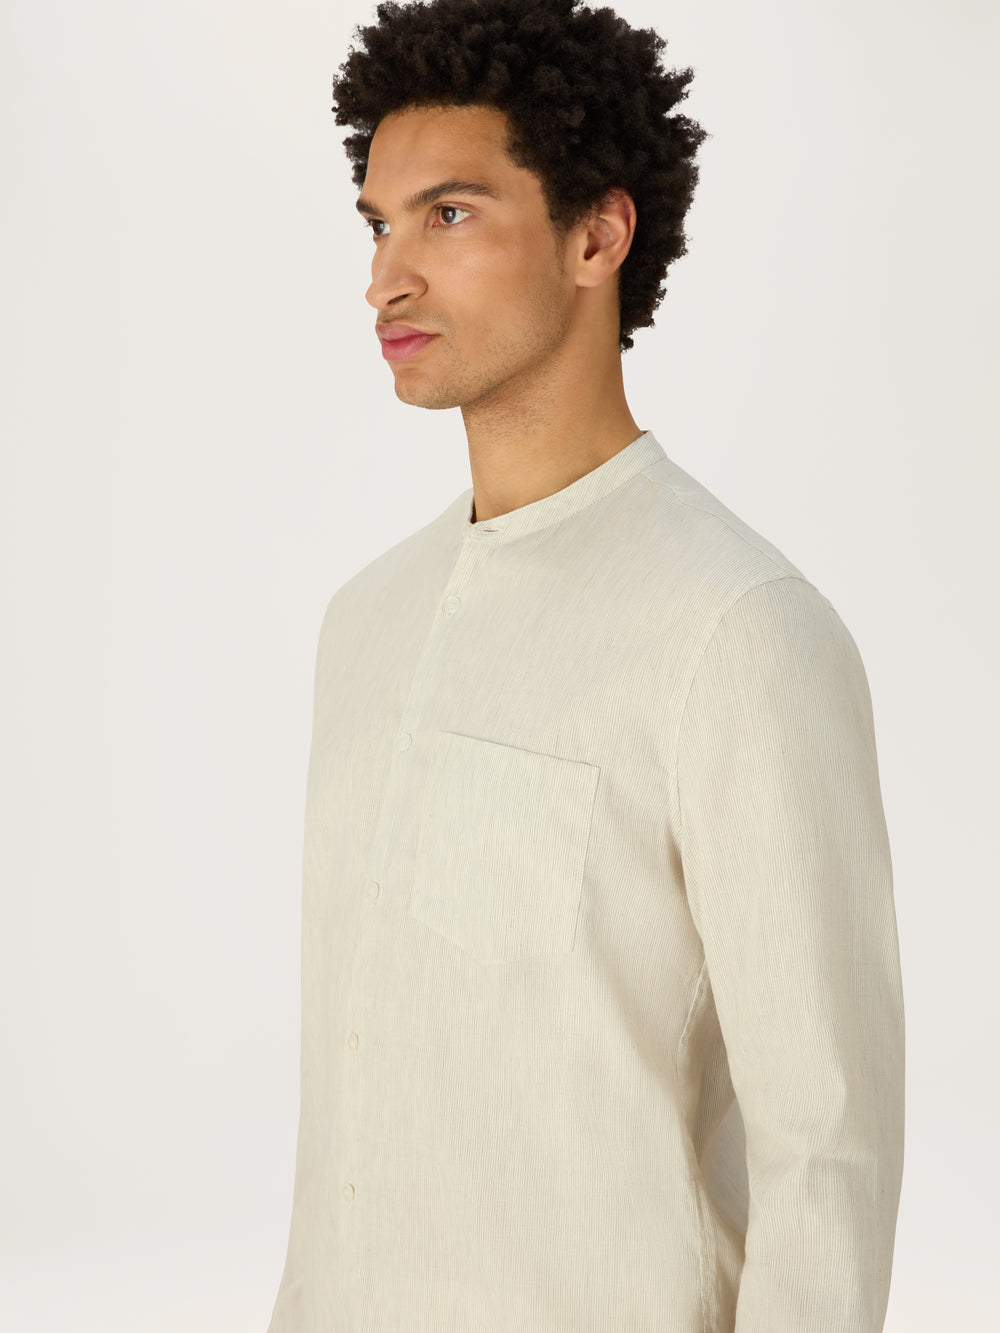 The All Day Shirt Linen Collarless || Stripe | Linen